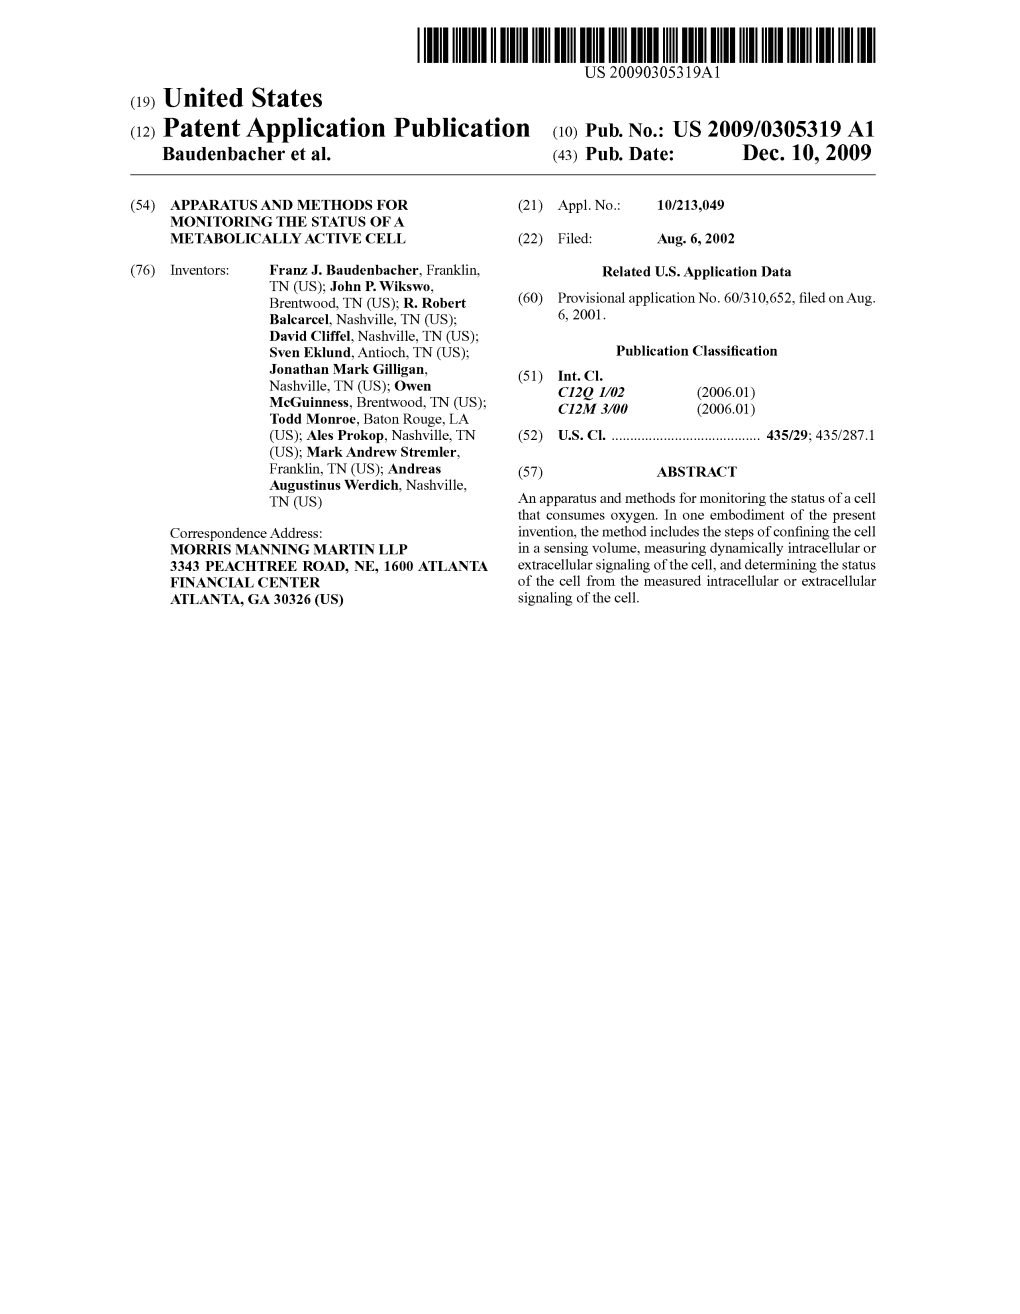 (12) Patent Application Publication (10) Pub. No.: US 2009/0305319 A1 Baudenbacher Et Al